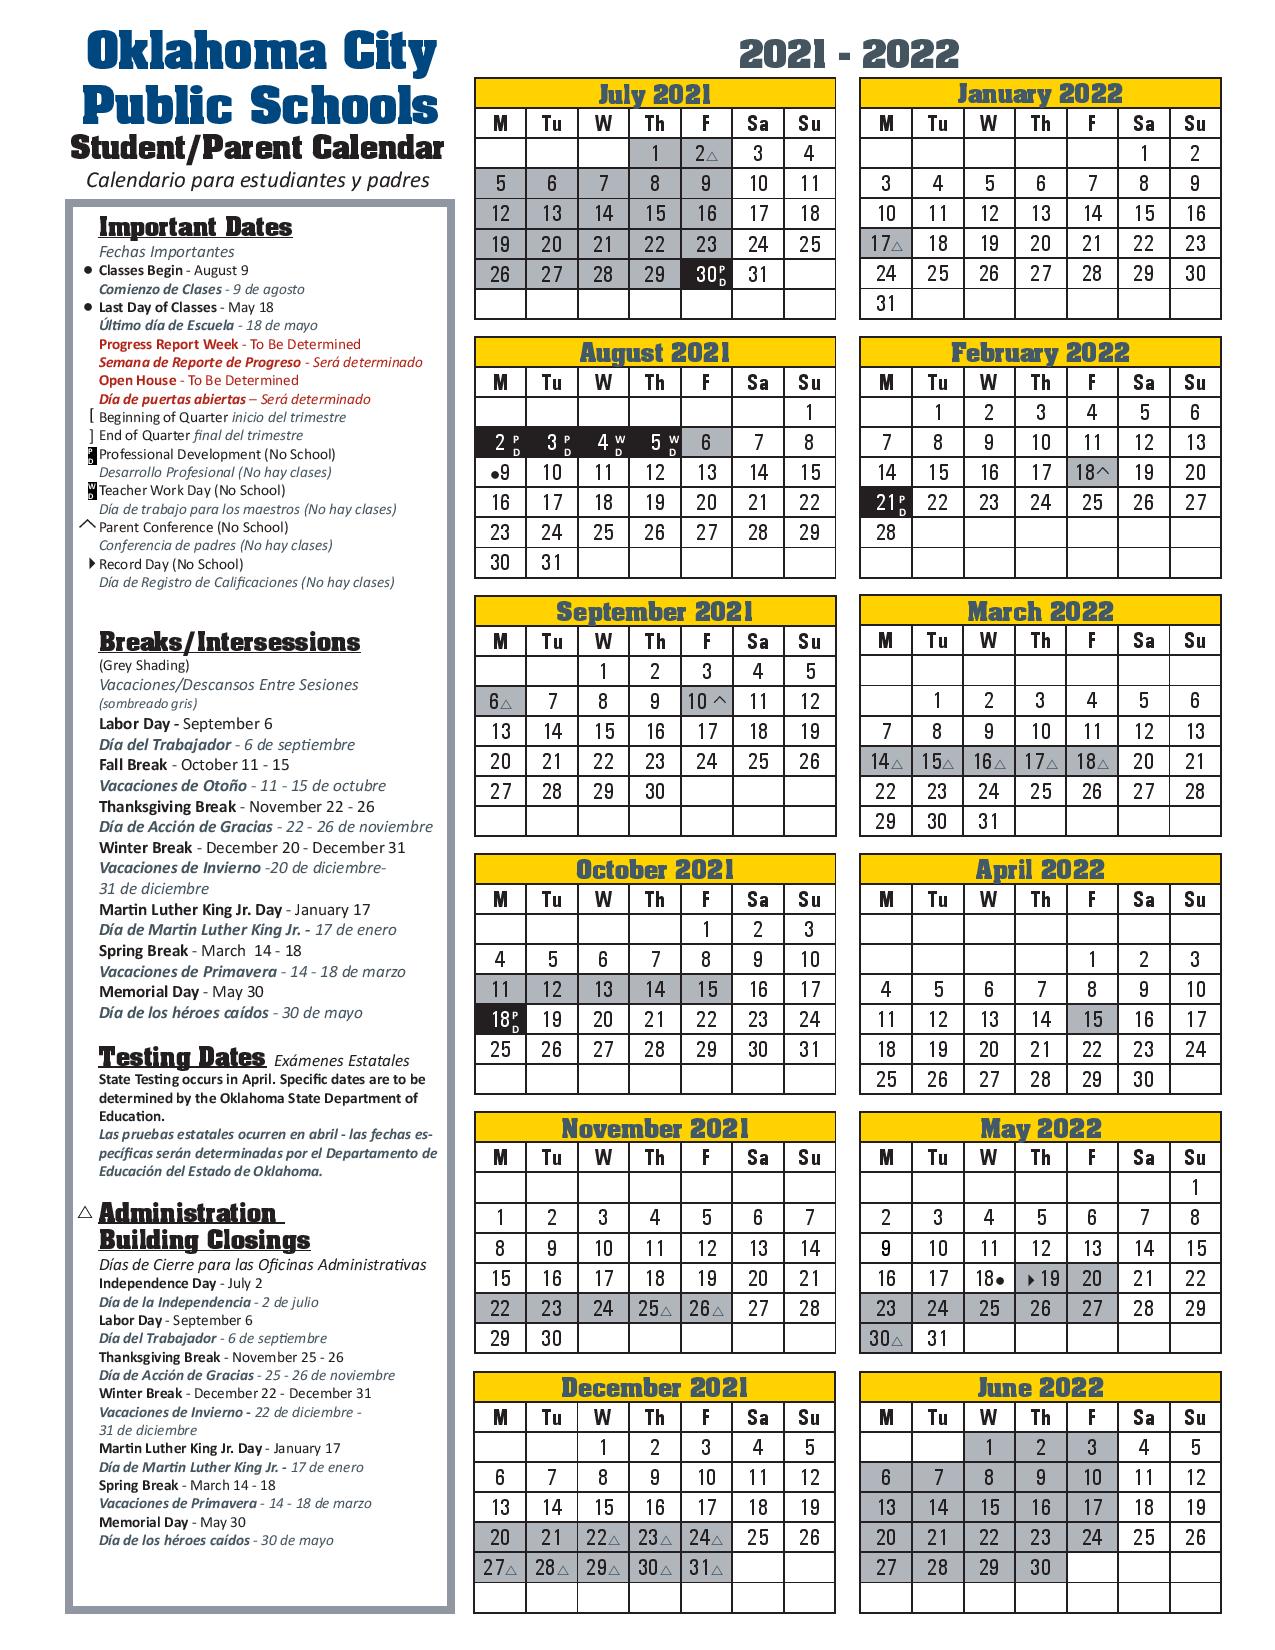 Ou Academic Calendar Spring 2022 Oklahoma City Public Schools Calendar 2021-2022 In Pdf